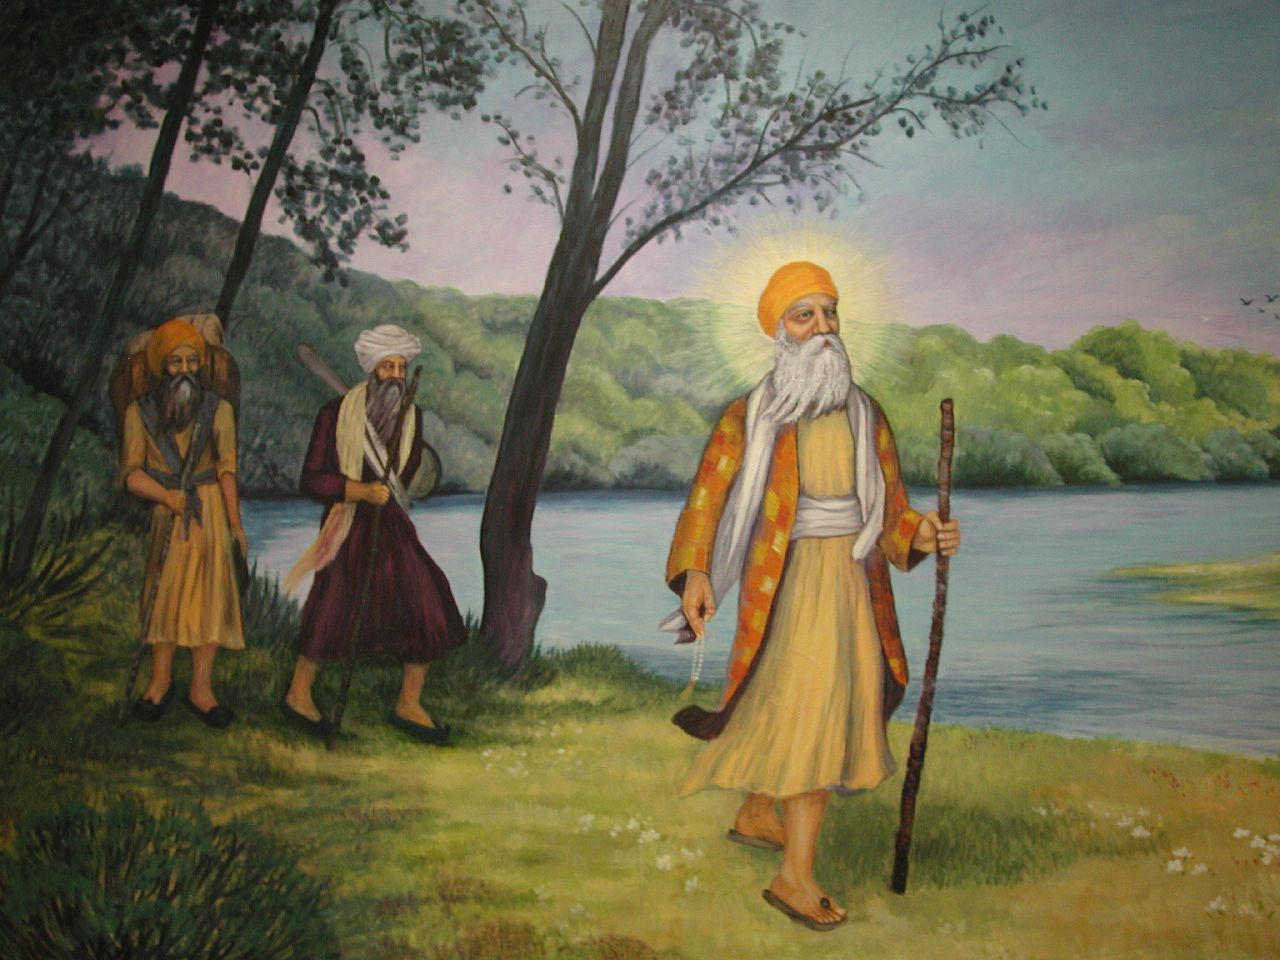 Image Gallery Of - Guru Nanak Dev Ji